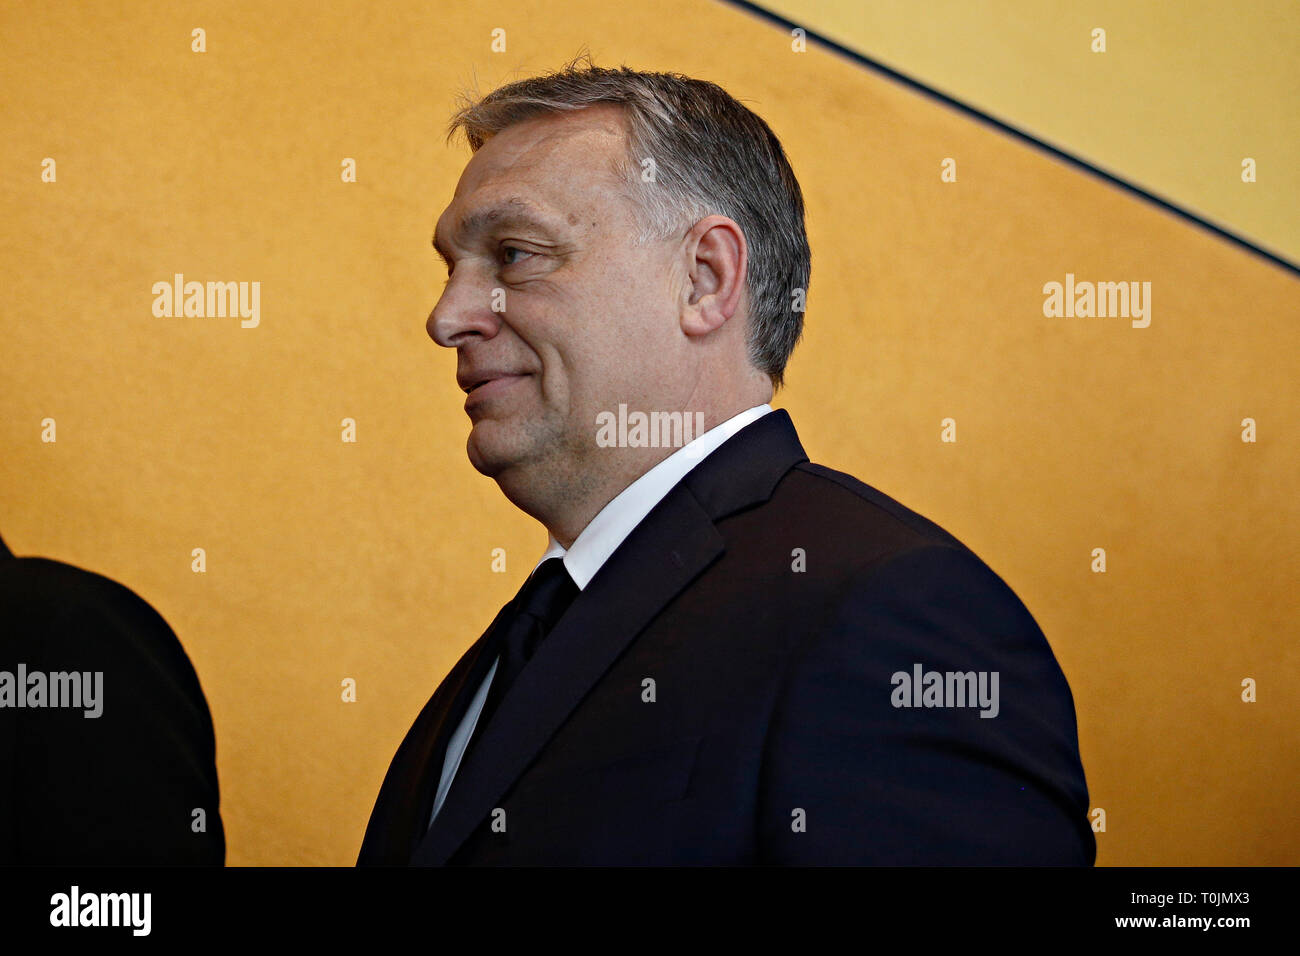 Brüssel, Belgien. 20. März 2019. Der ungarische Premierminister Victor Orban kommt für die Europäische Volkspartei (EVP) im Europäischen Parlament. Alexandros Michailidis/Alamy leben Nachrichten Stockfoto